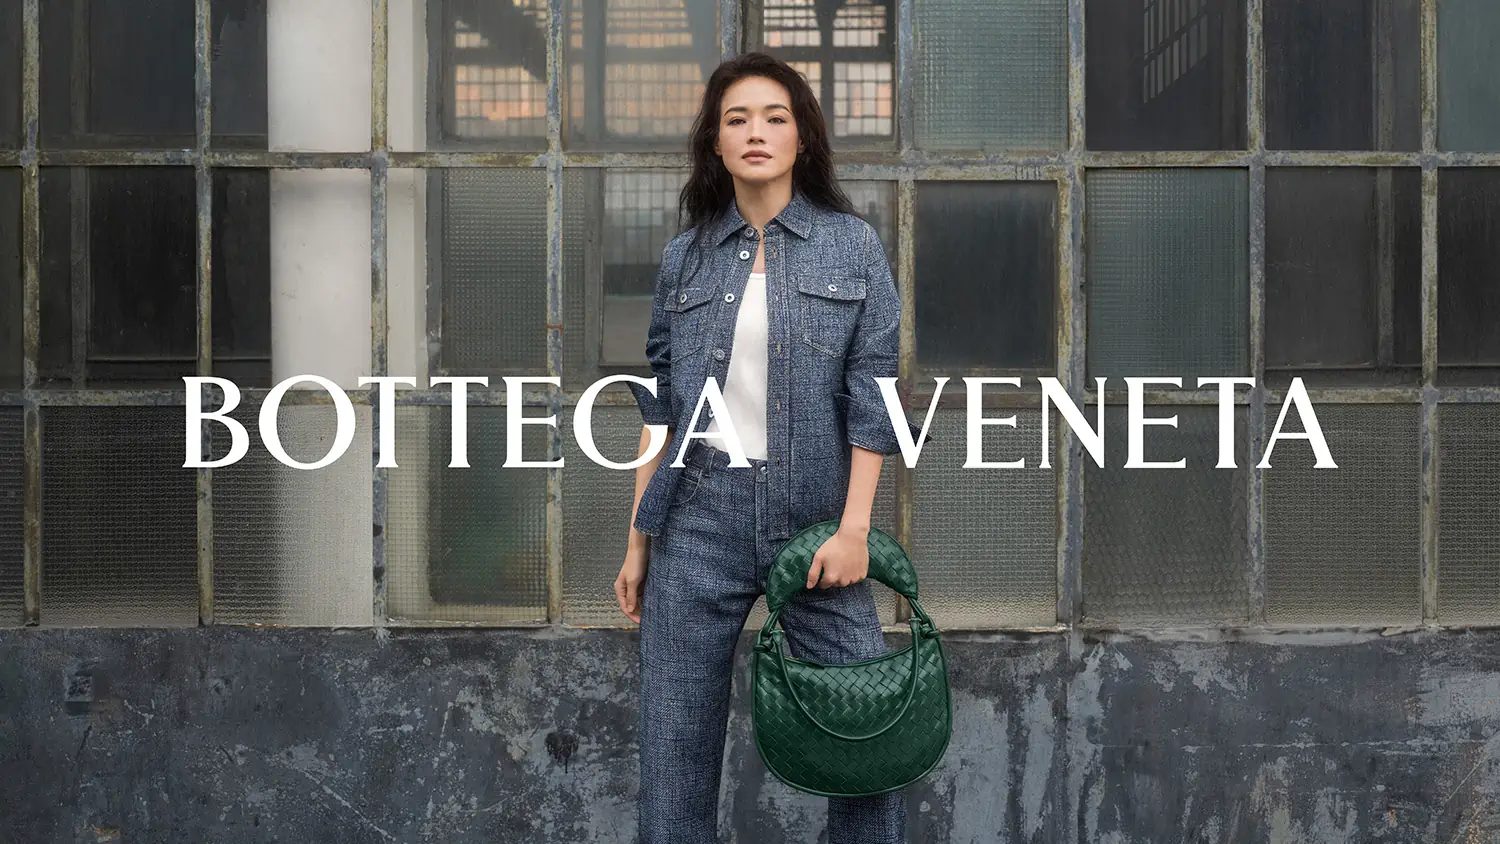 Bottega Veneta welcomes Shu Qi as its newest global ambassador